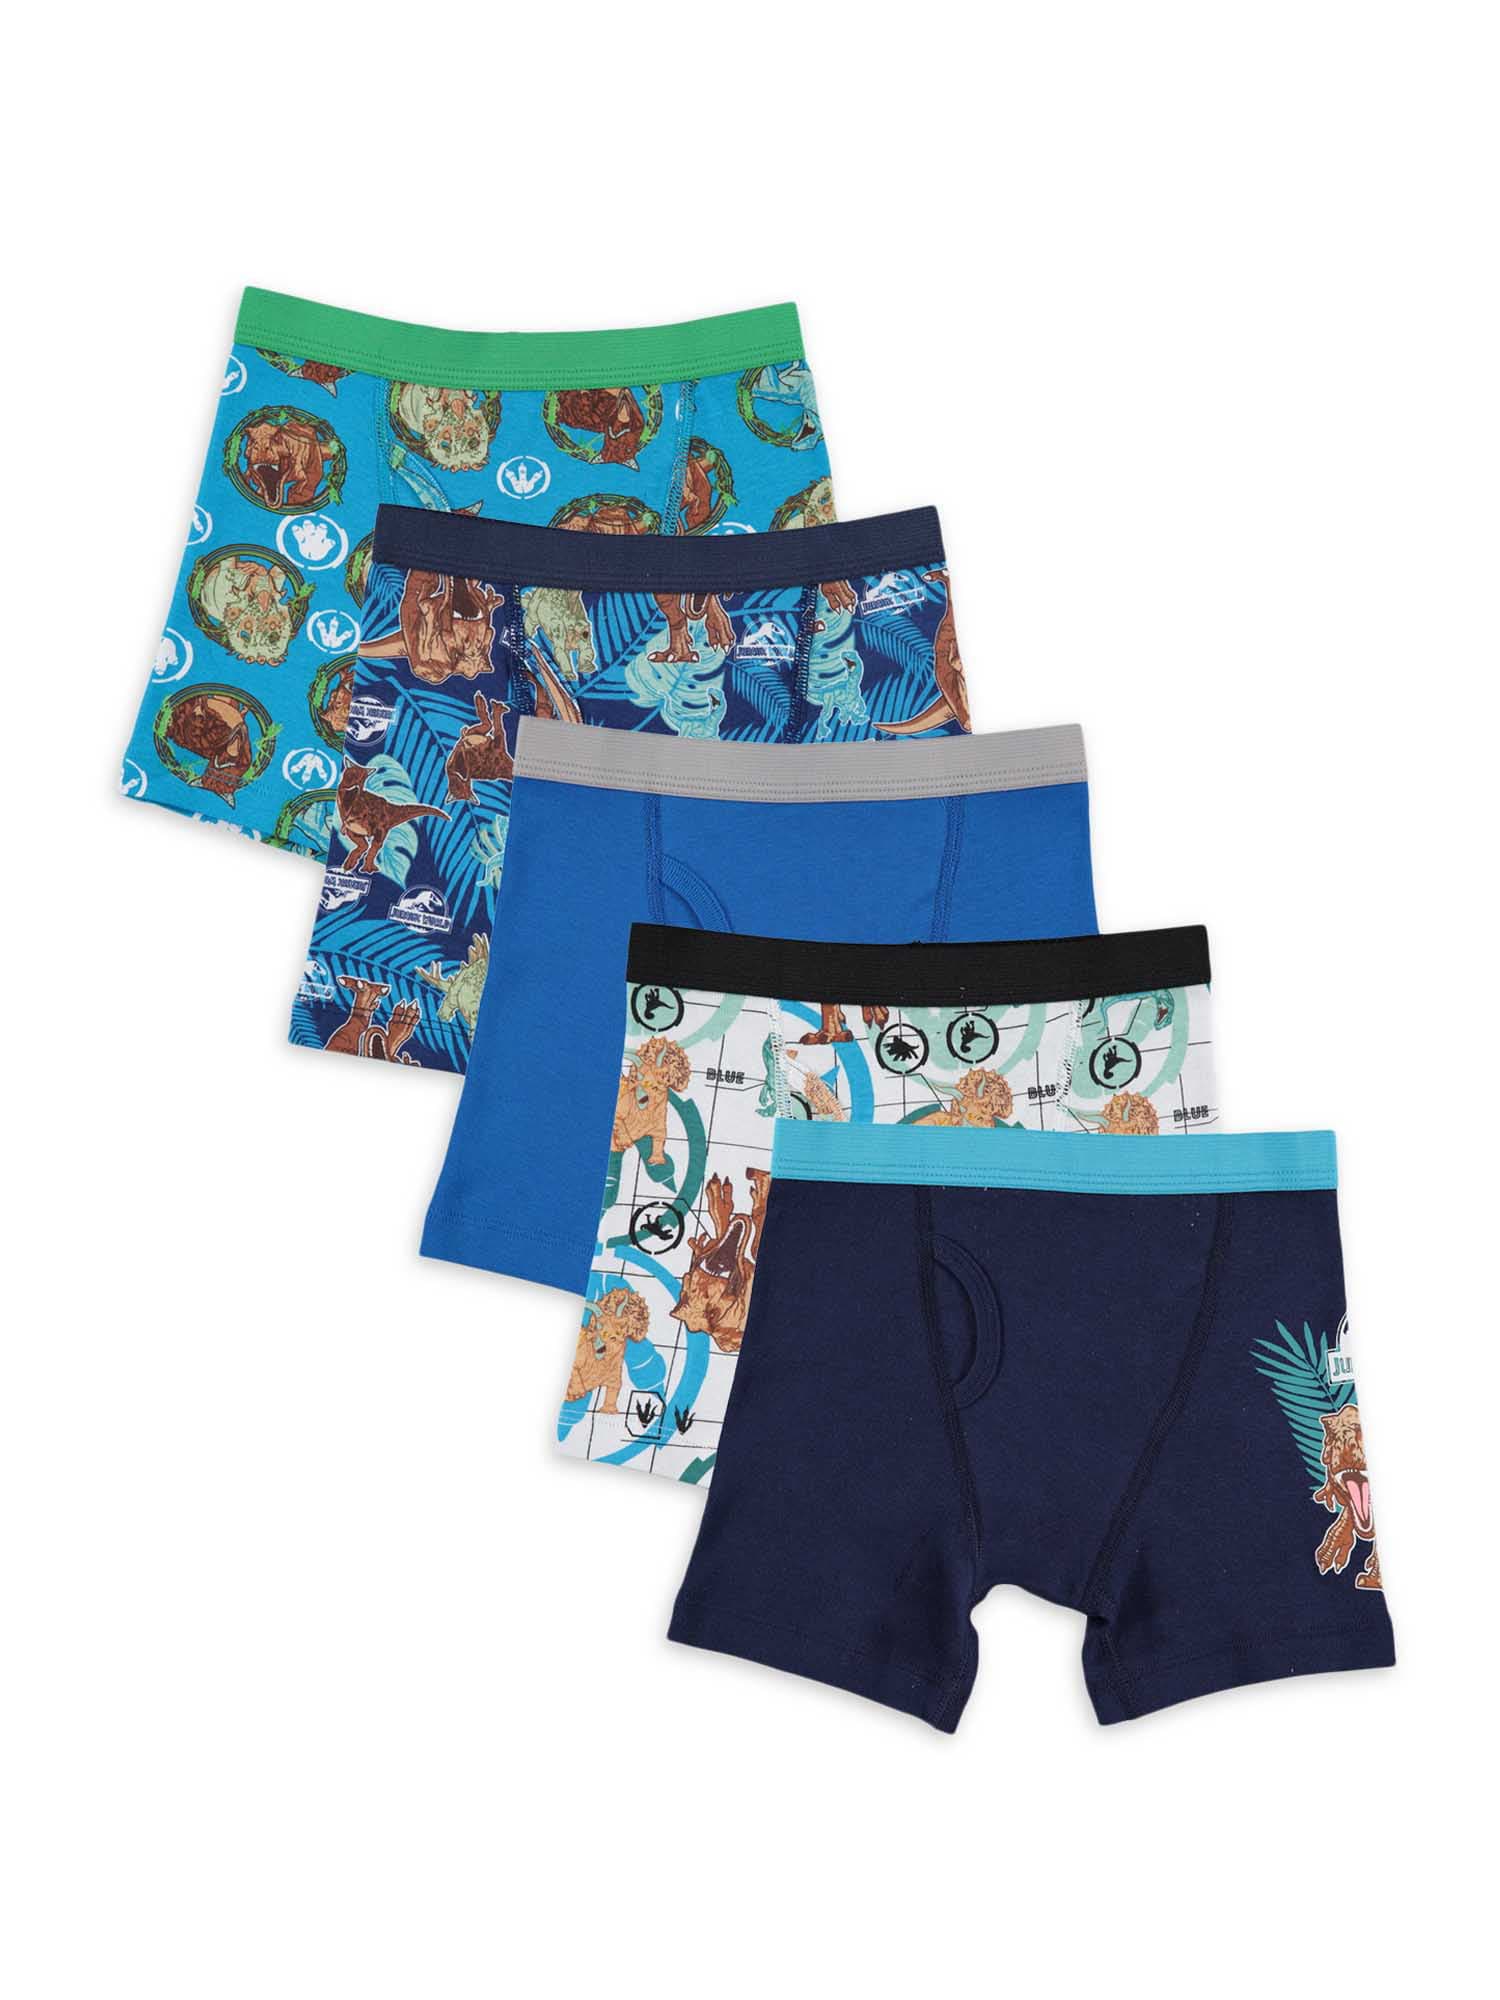 Disney Frozen Girls Brief Underwear 7-Pack, Sizes 4-8 